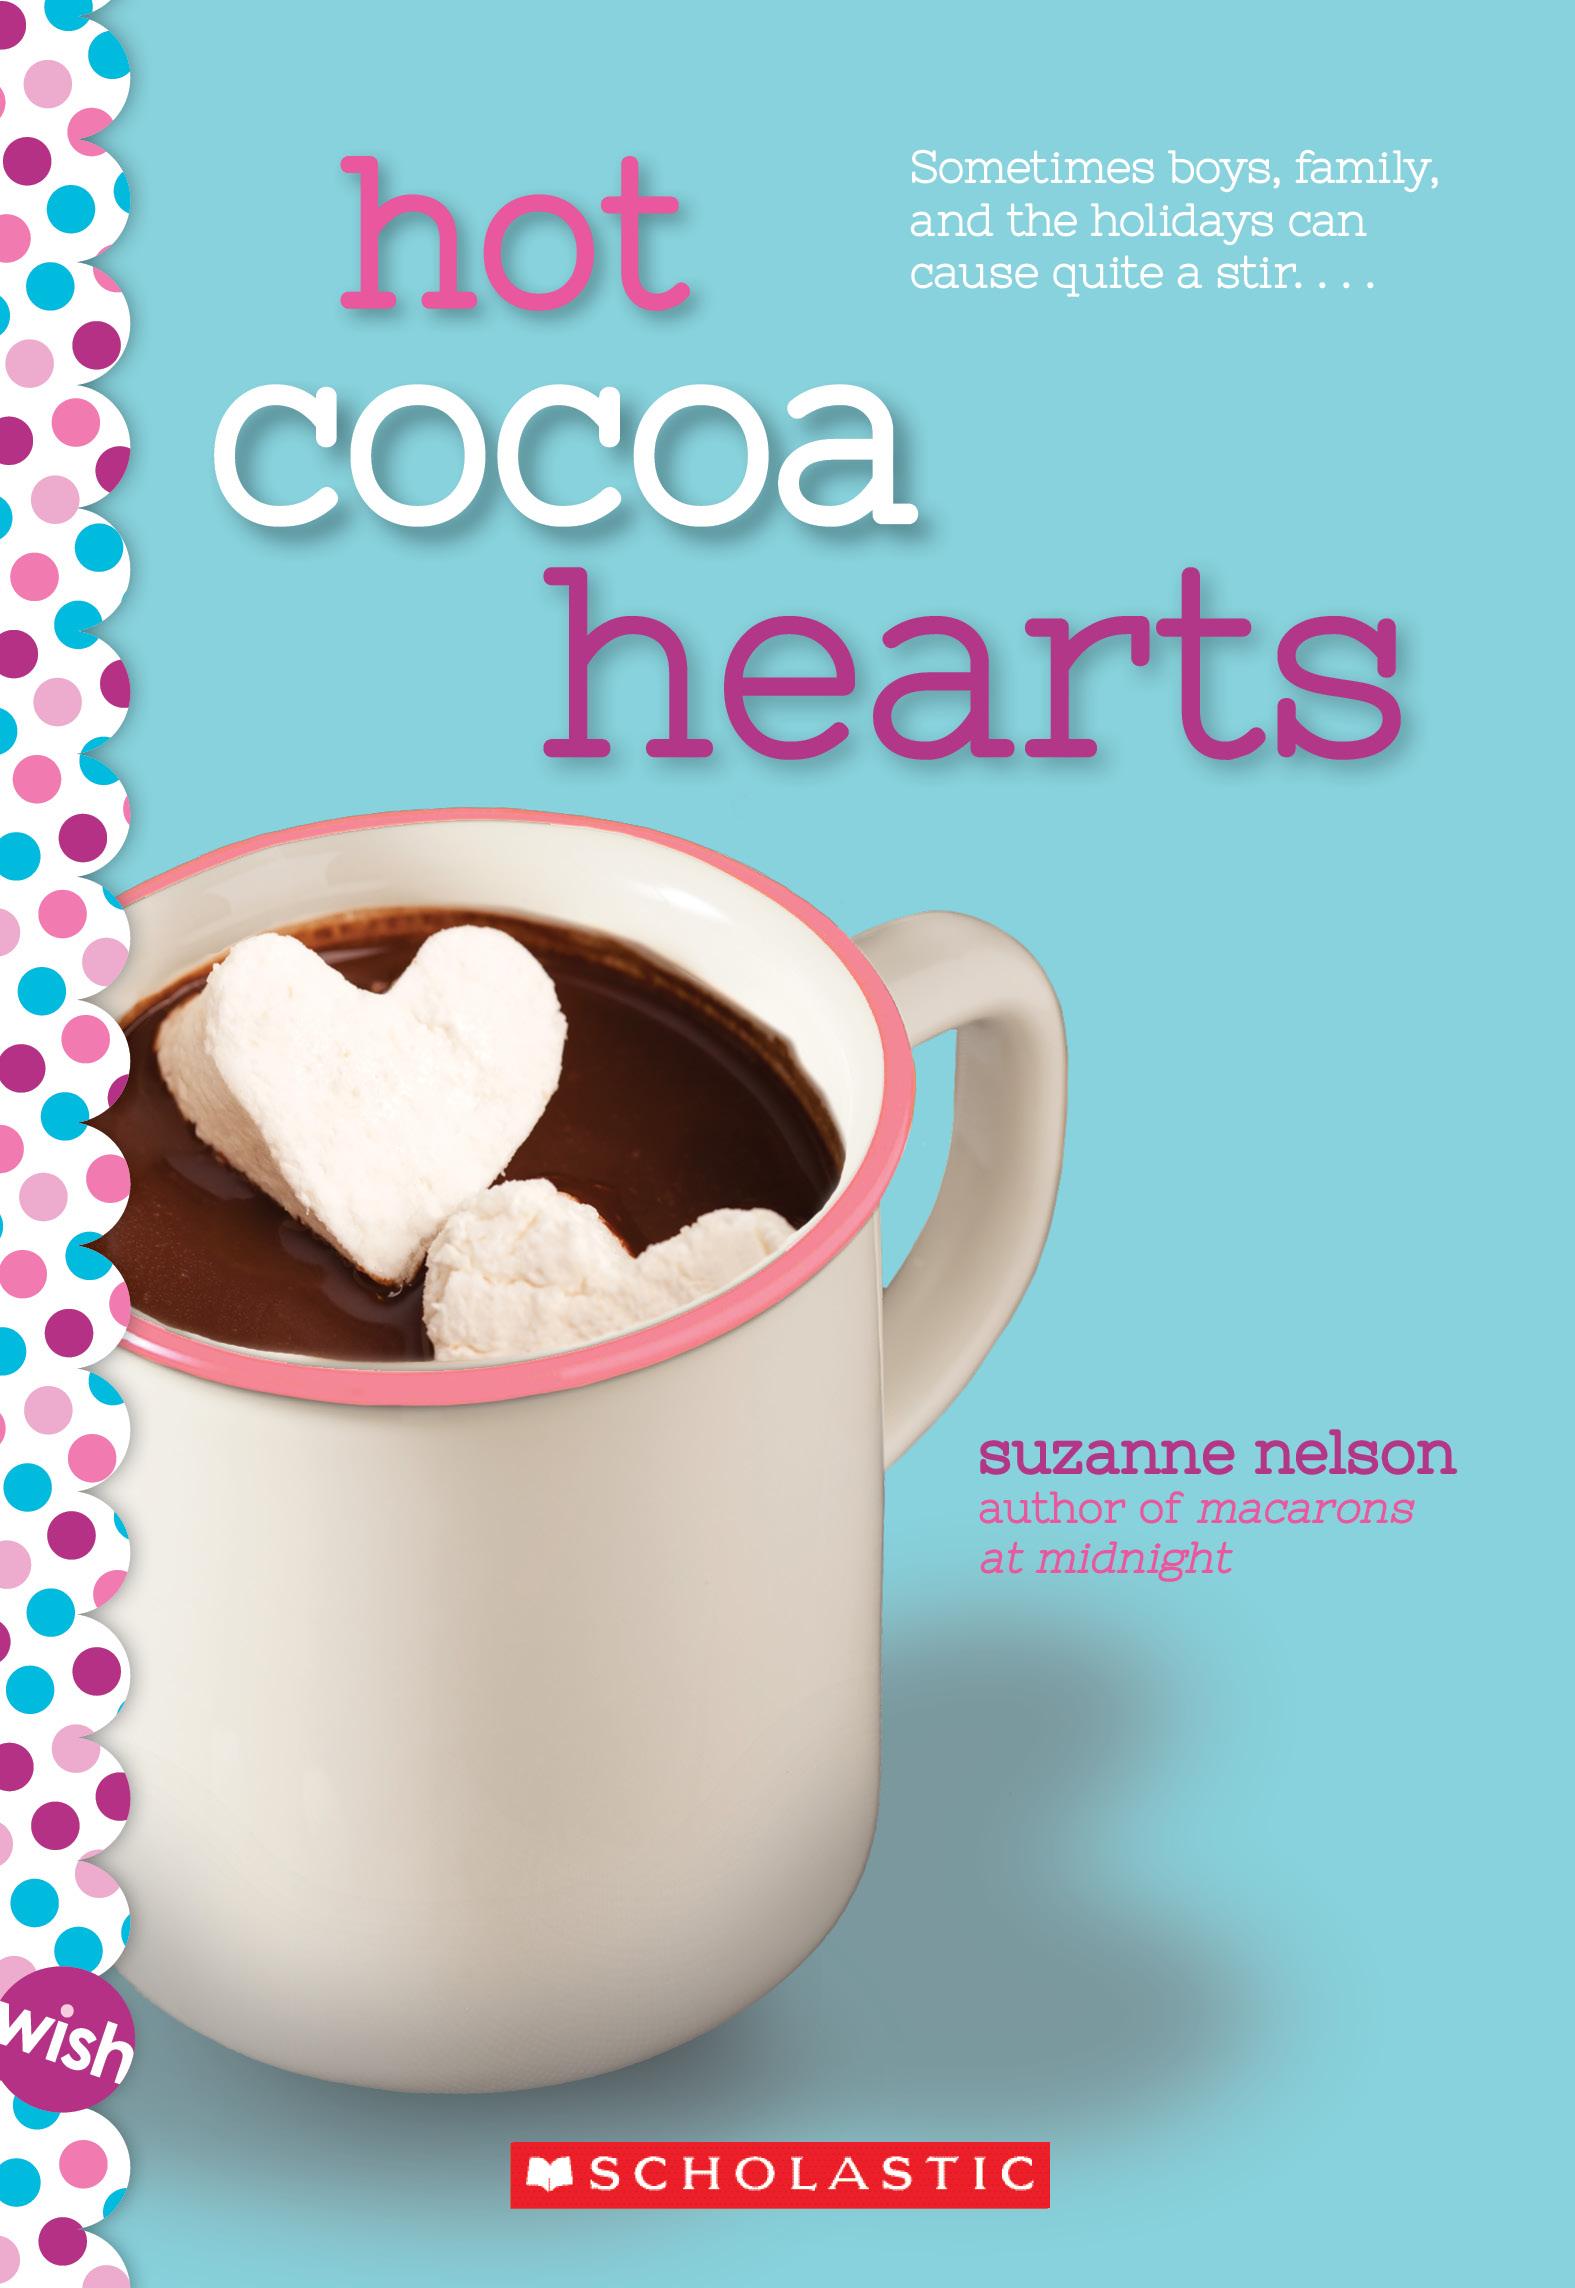 11Hot Cocoa Hearts